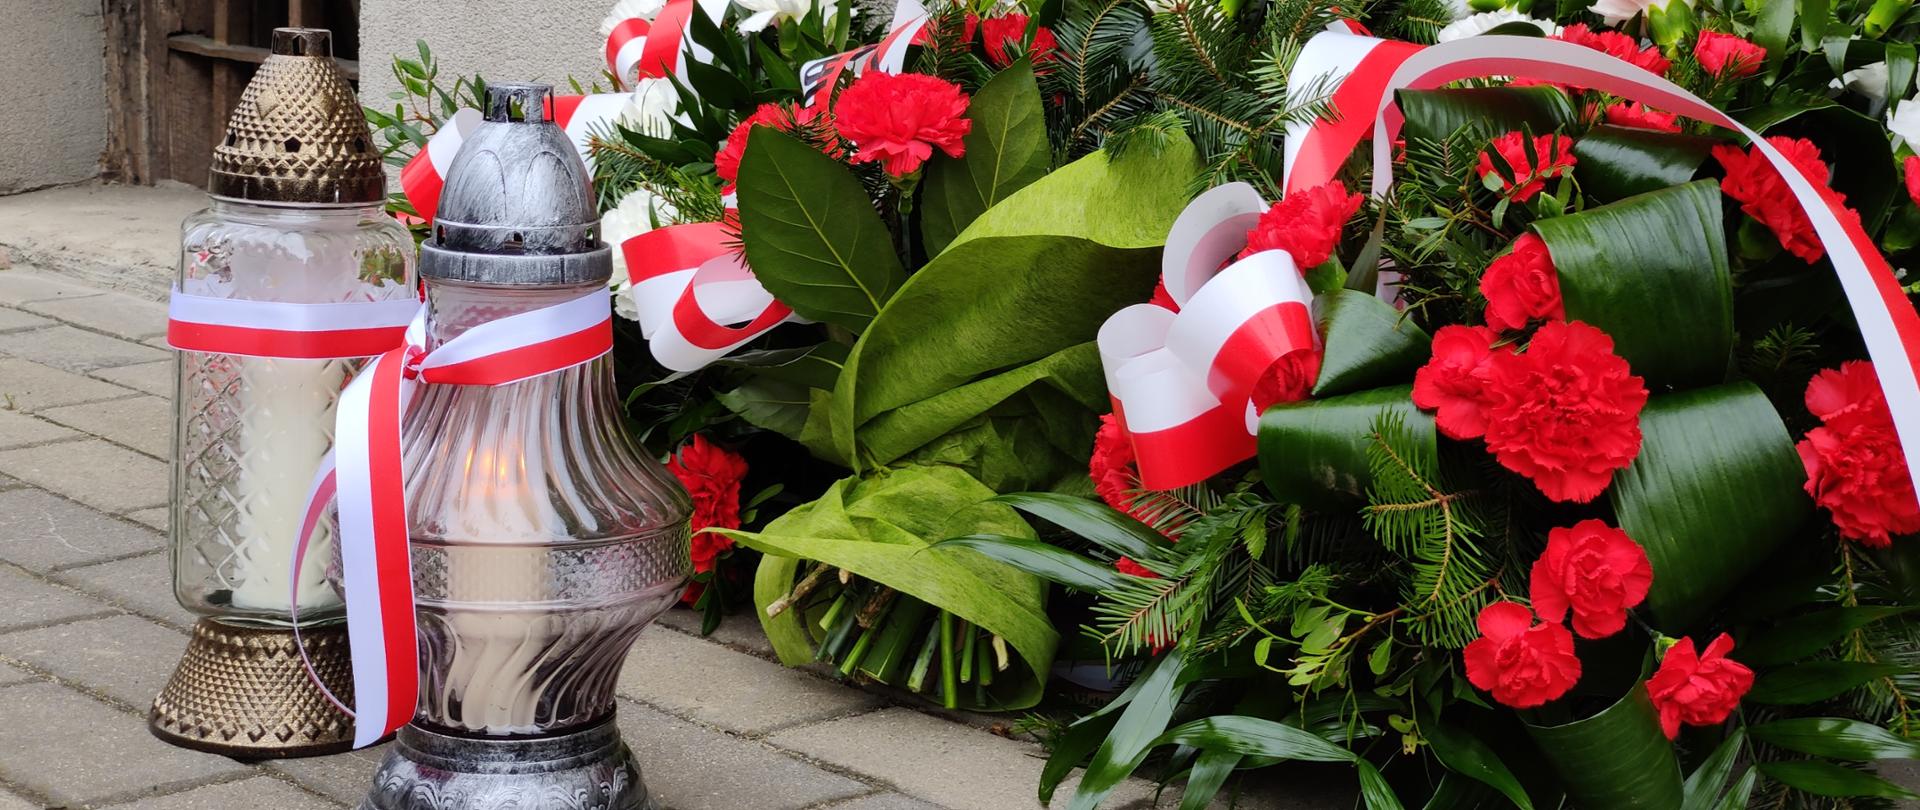 Kwiaty i znicze pod tablicą upamiętniającą ofiary Powiatowego Urzędu Bezpieczeństwa Publicznego w Jaśle